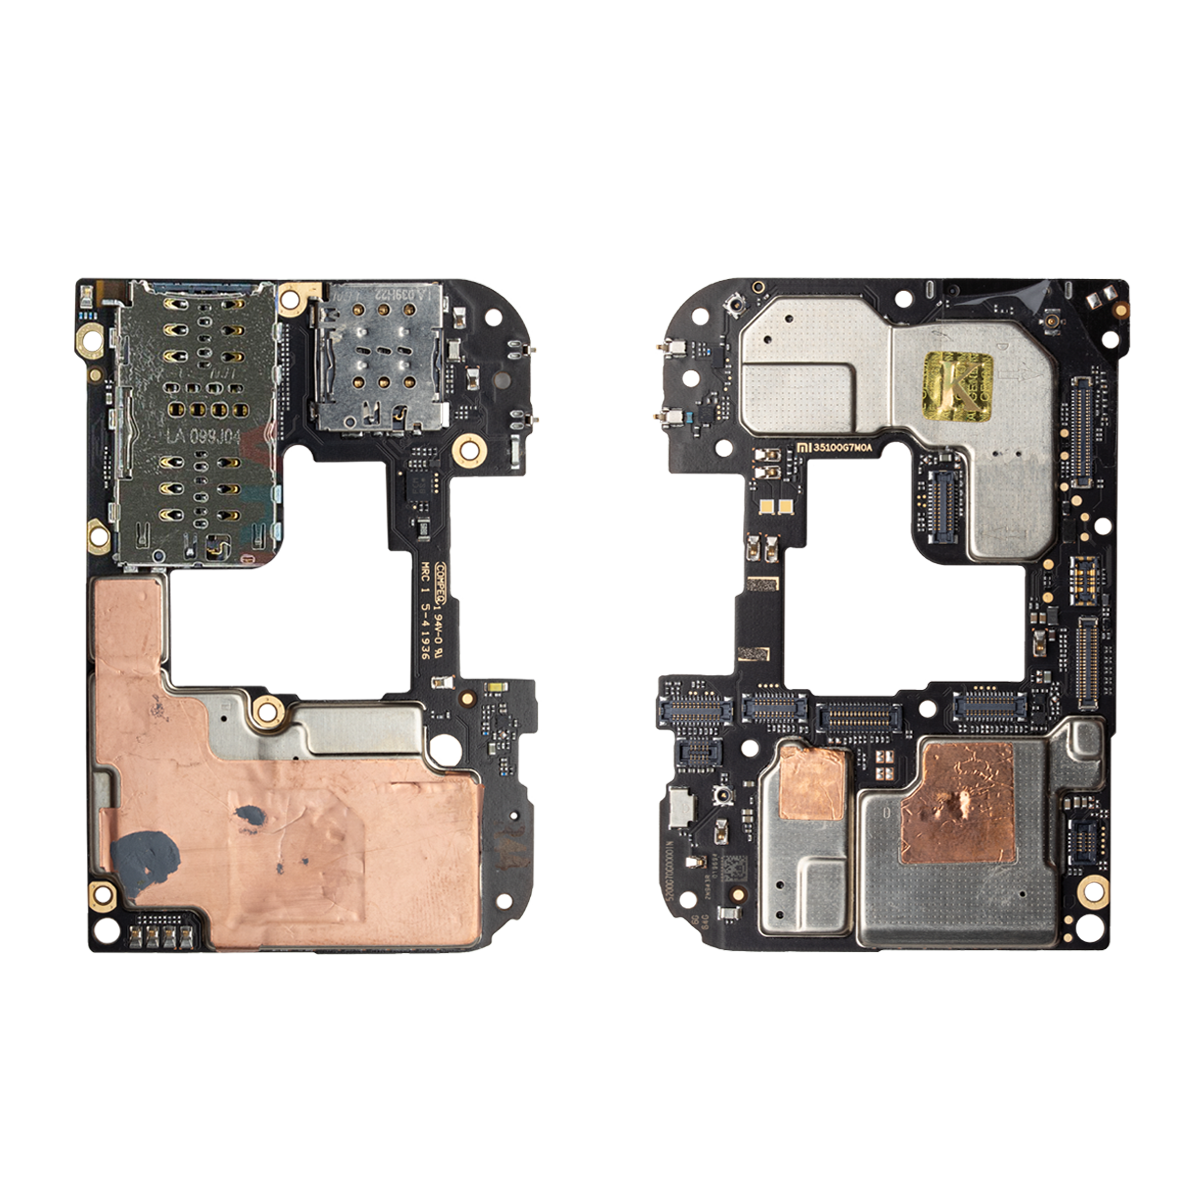 برد اصلی گوشی شیائومی مدل Redmi Note 8 Pro ظرفیت 64 گیگابایت رم 6 گیگابایت